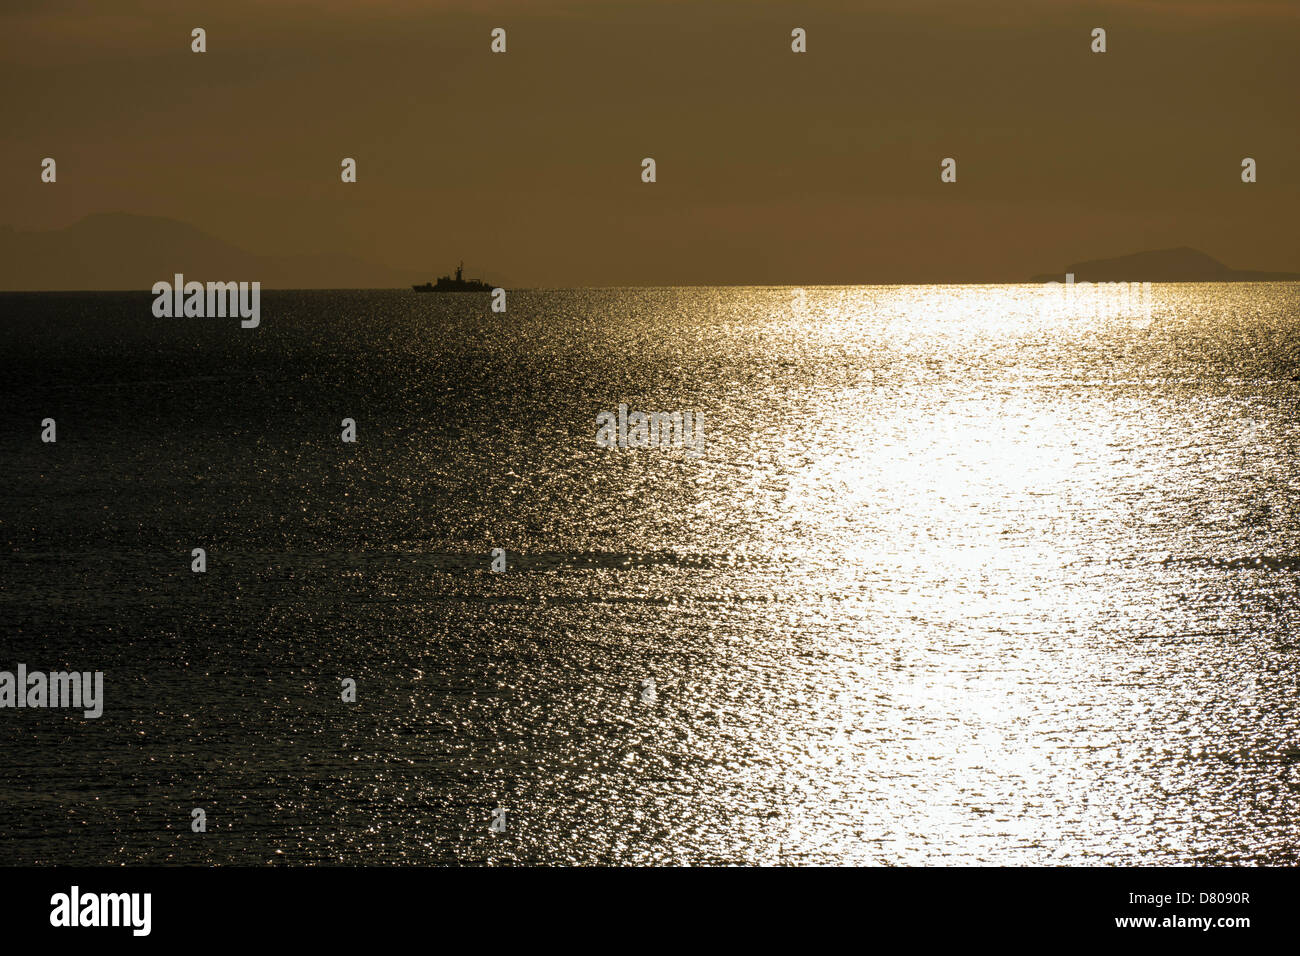 Goldene orange Sonnenuntergang mit Reflexionen und Fischerboot, Ägäis, Kalymnos, Griechenland Stockfoto